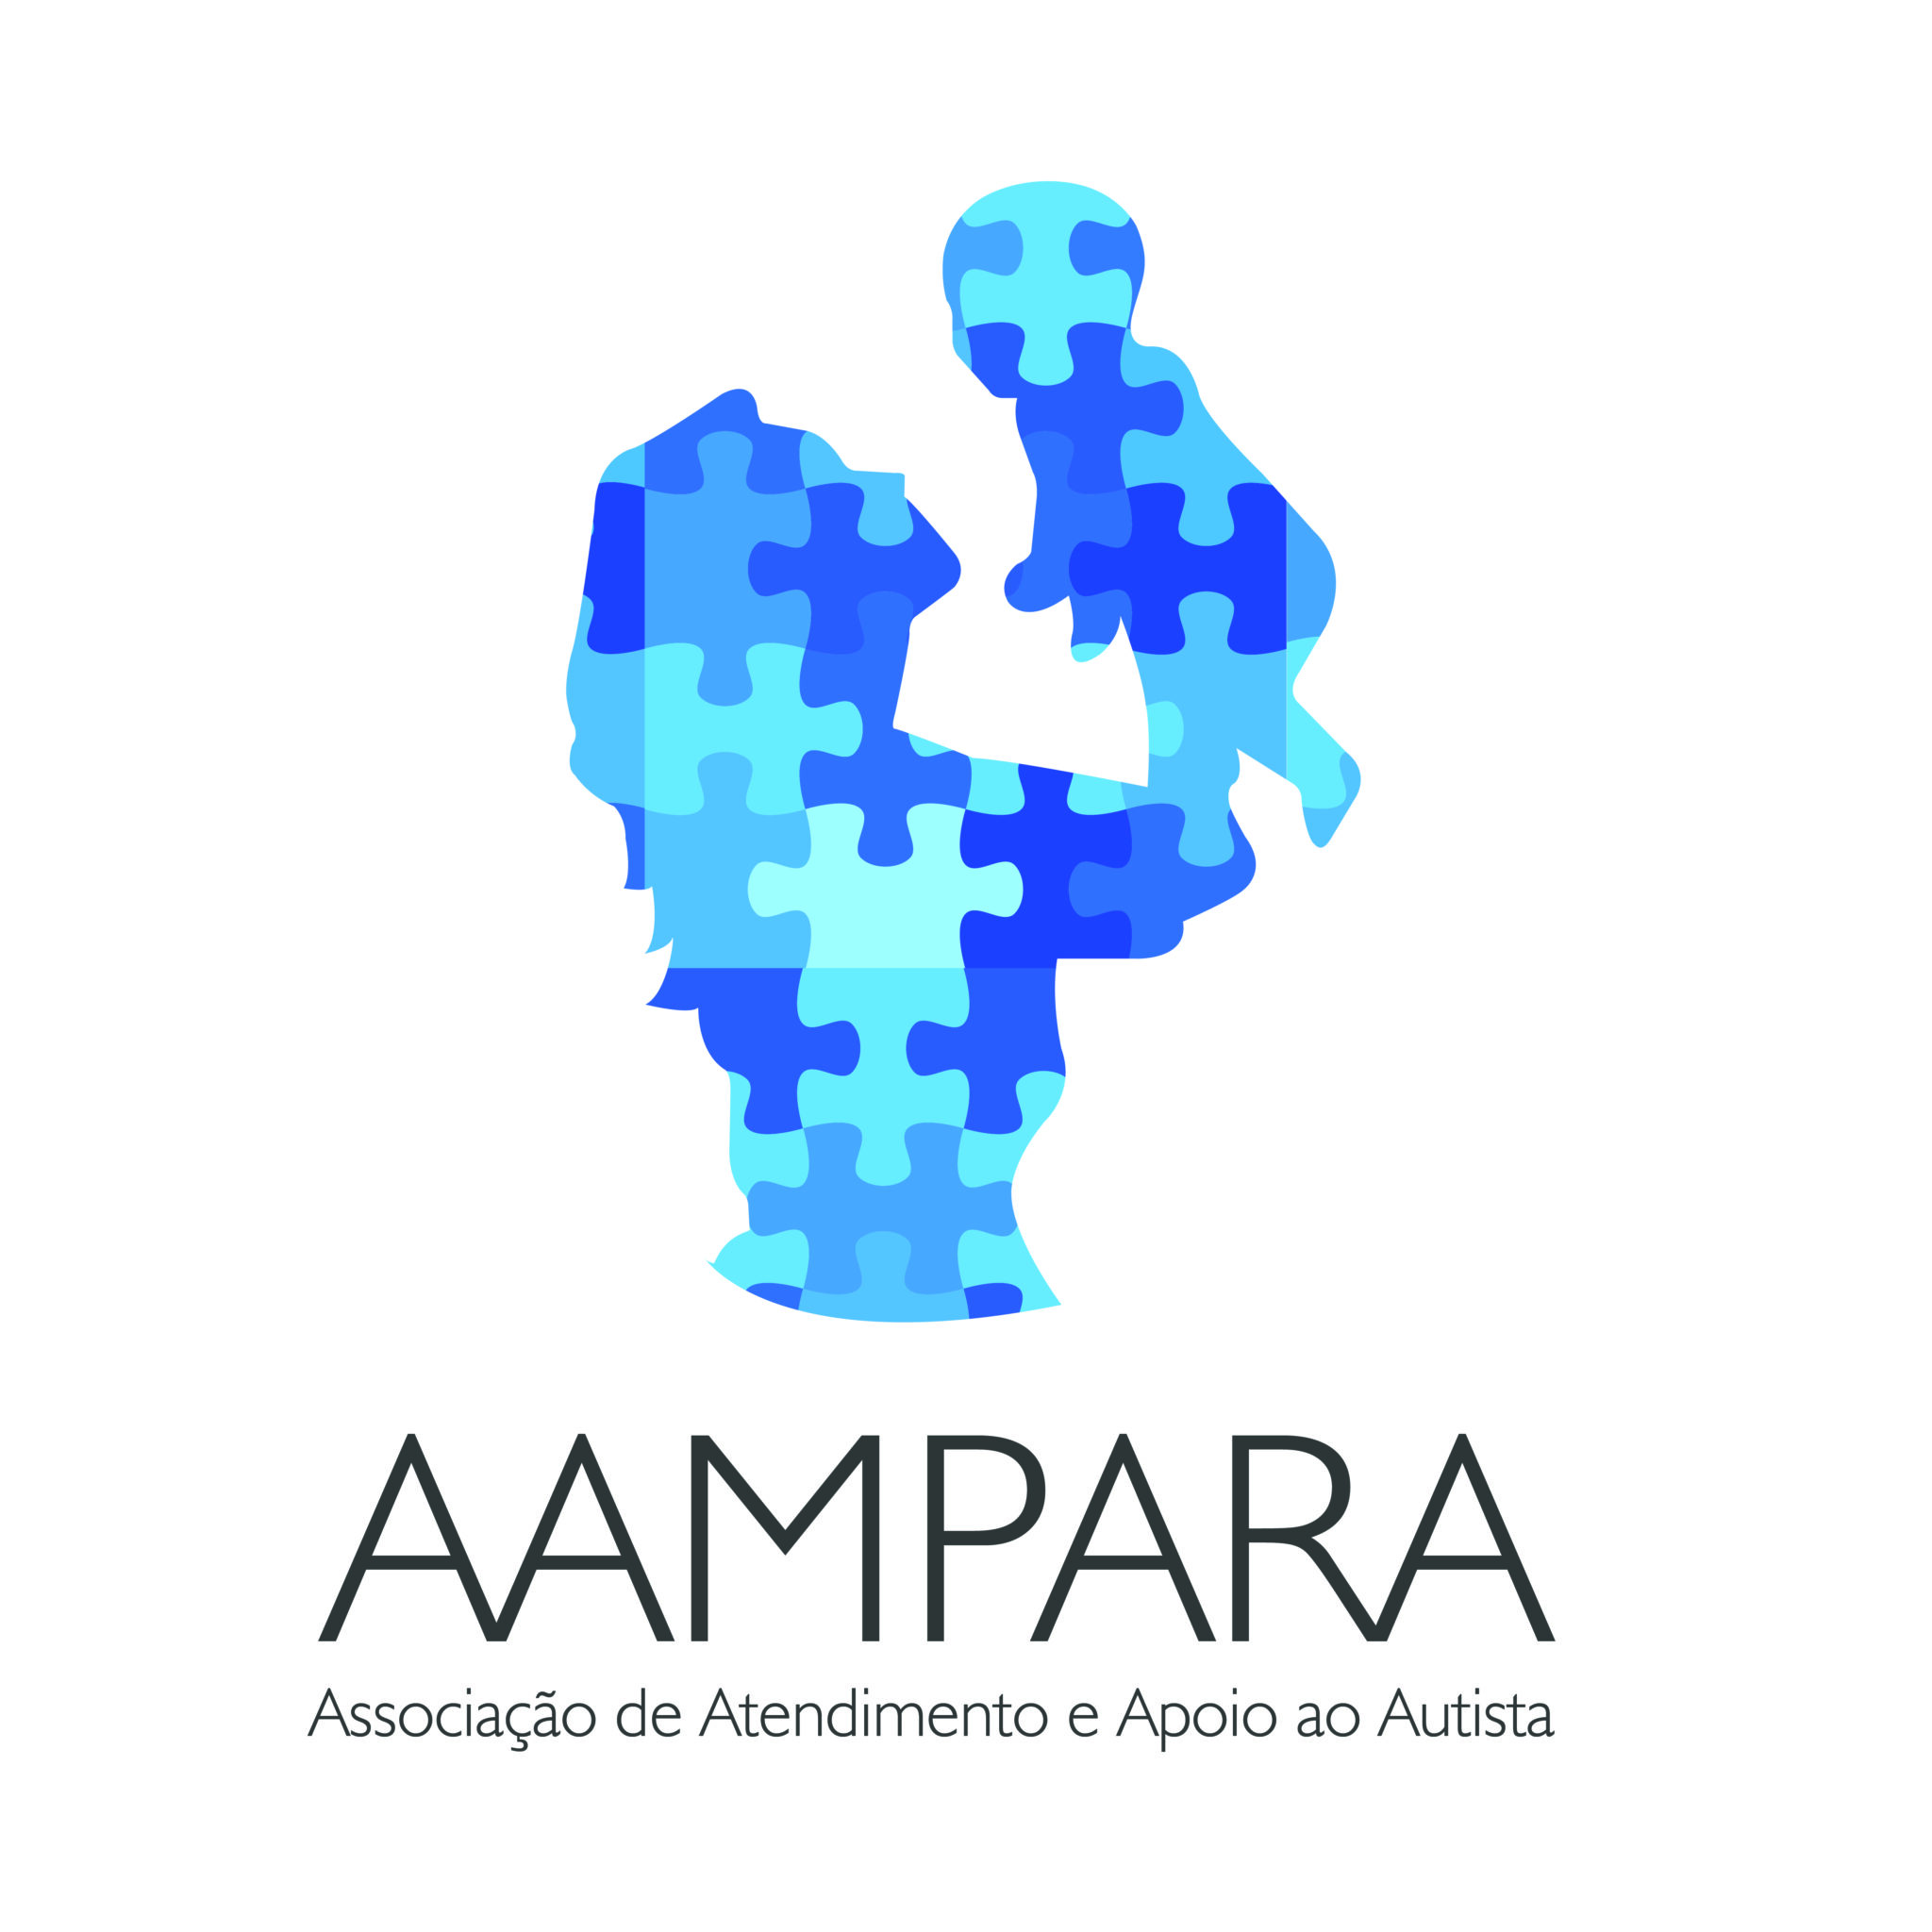 AAMPARA – Associação de Atendimento e Apoio ao Autista